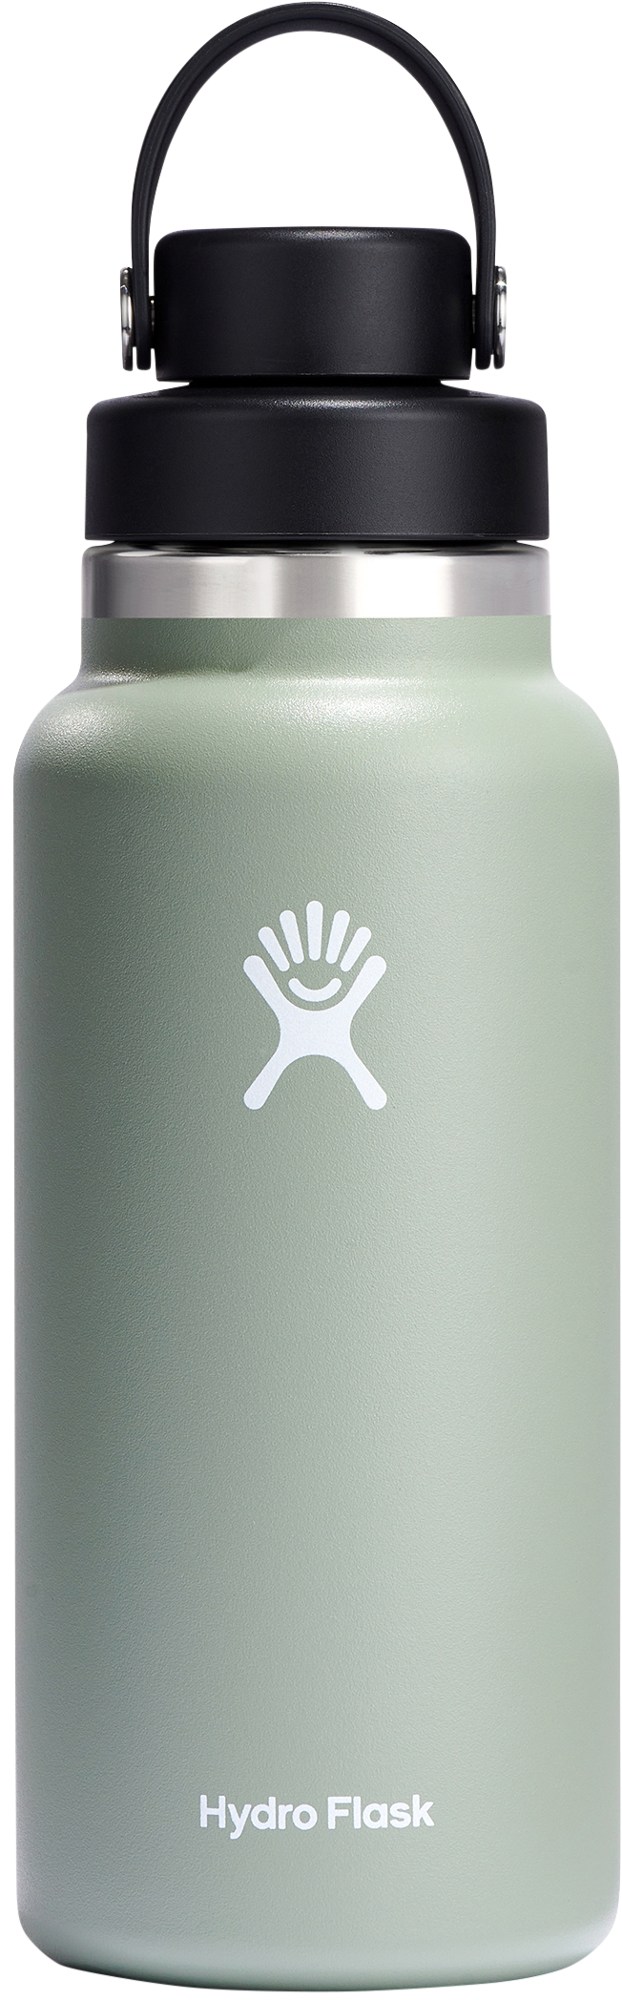 Вакуумная бутылка для воды с широким горлышком и гибкой крышкой - 32 эт. унция Hydro Flask, зеленый